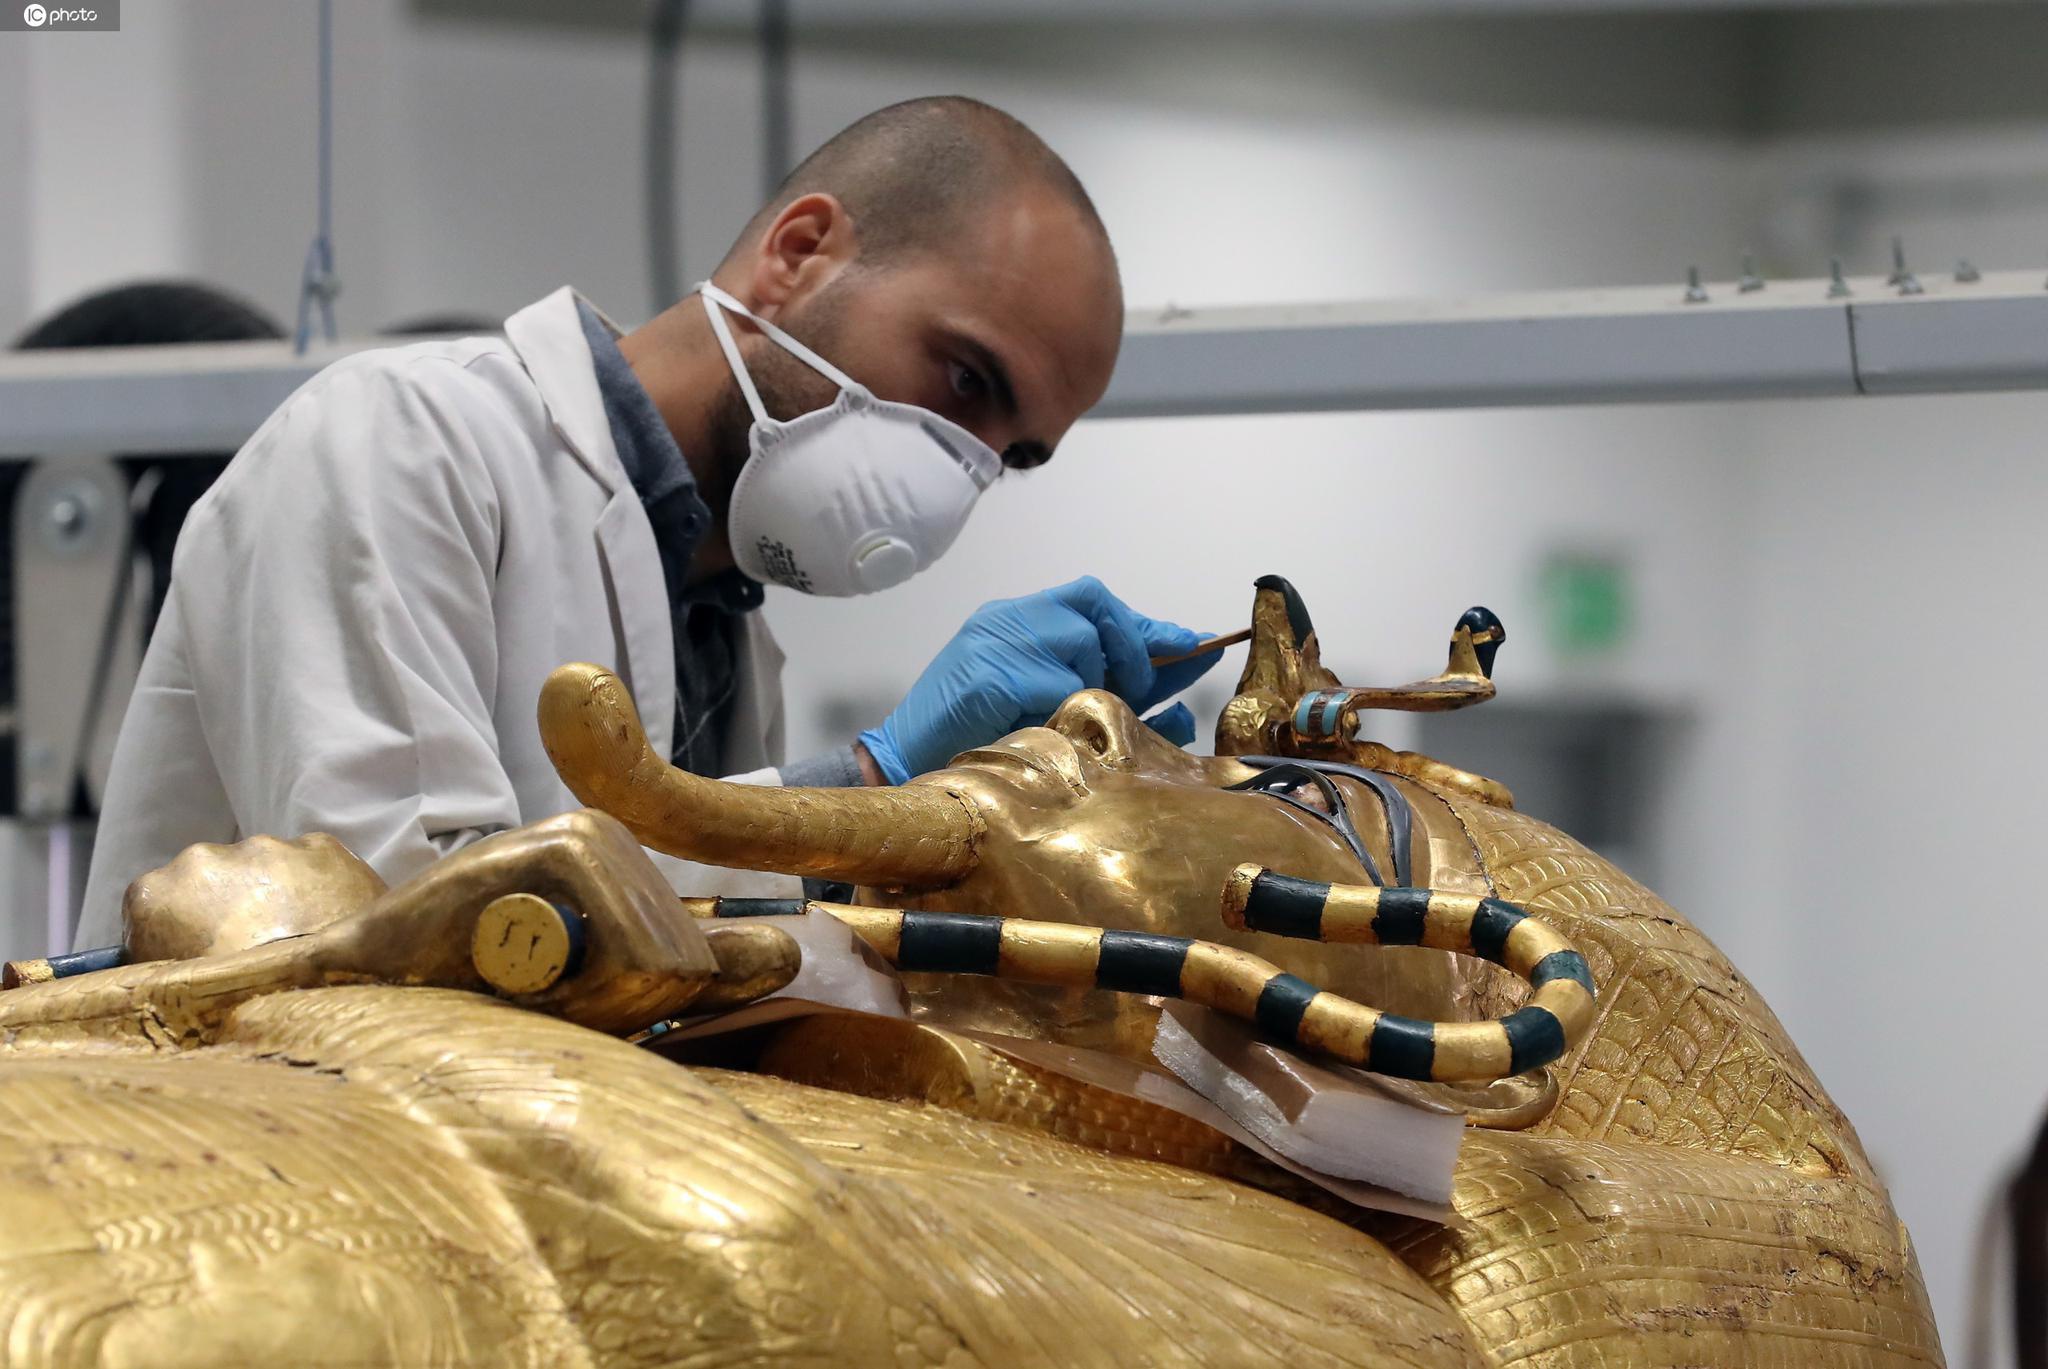 镀金层开裂 埃及图坦卡蒙法老金棺首次修复